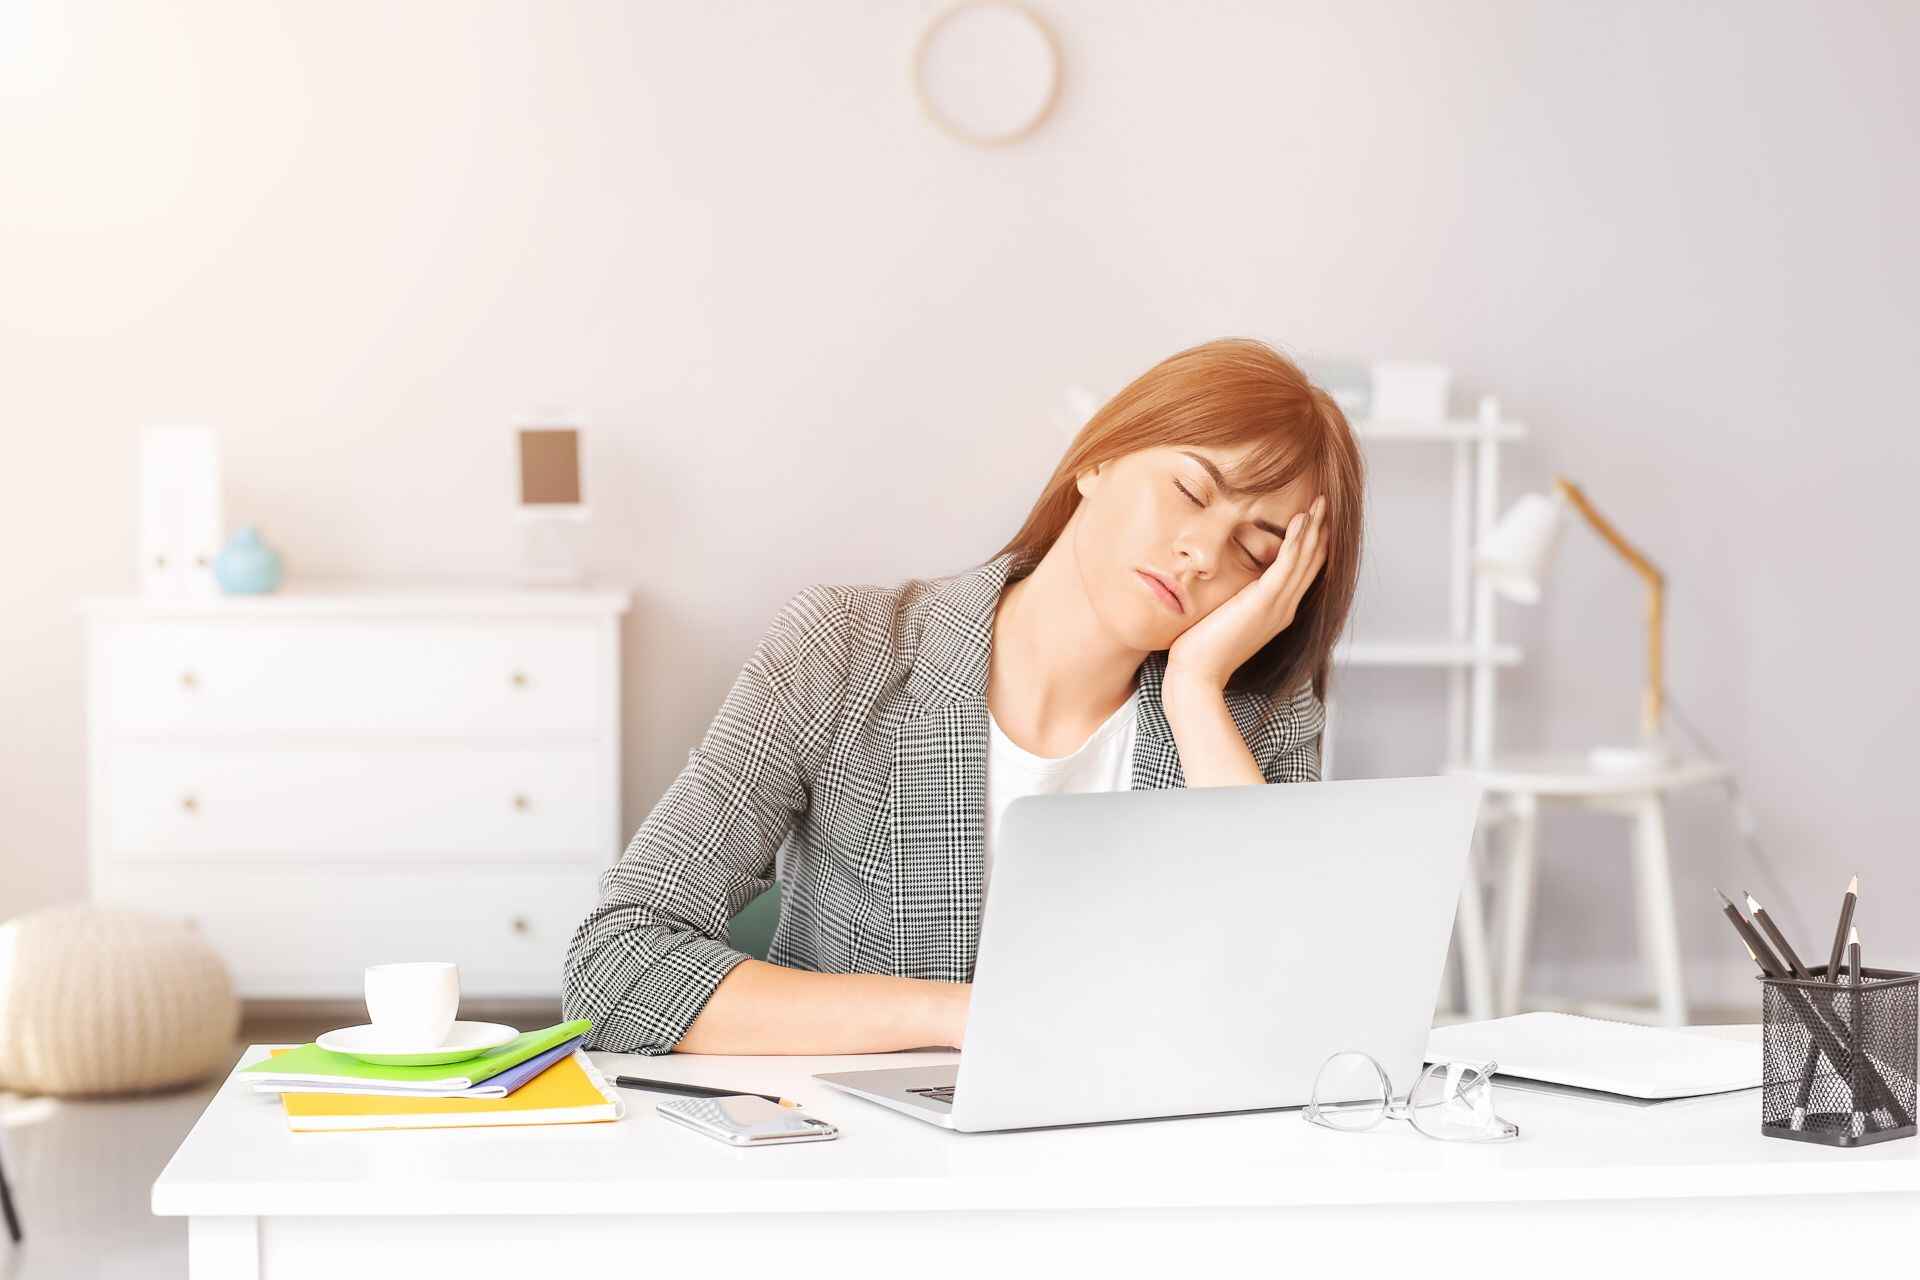 Sedeče delo: obstaja bistvena razlika med telesno in duševno utrujenostjo